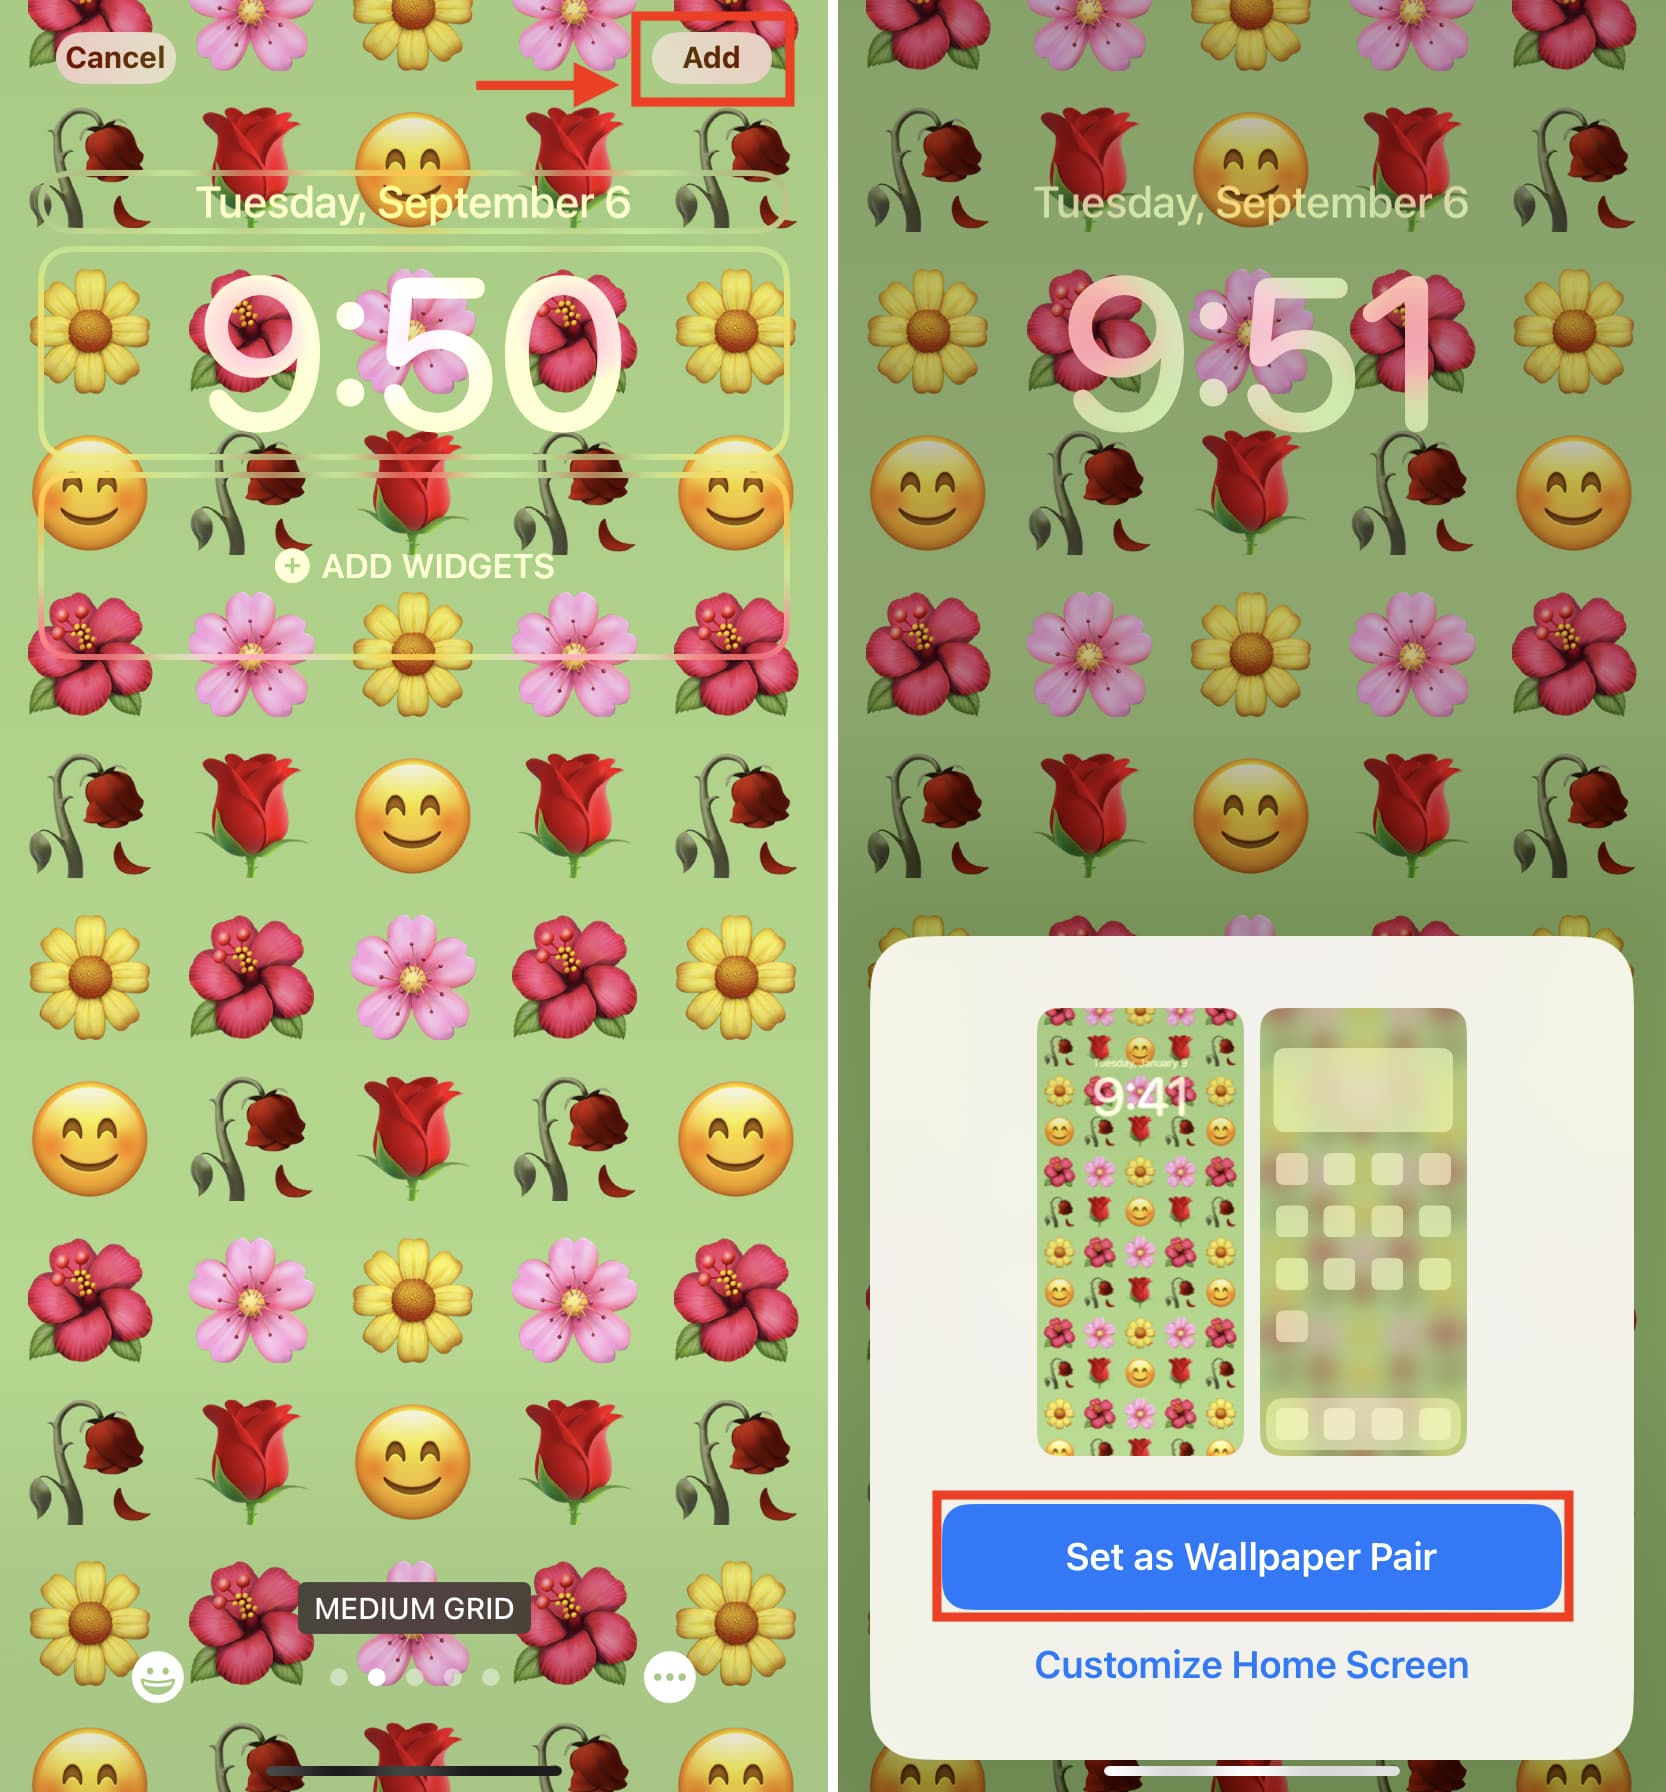 Set emoji as your iPhone Lock Screen wallpaper